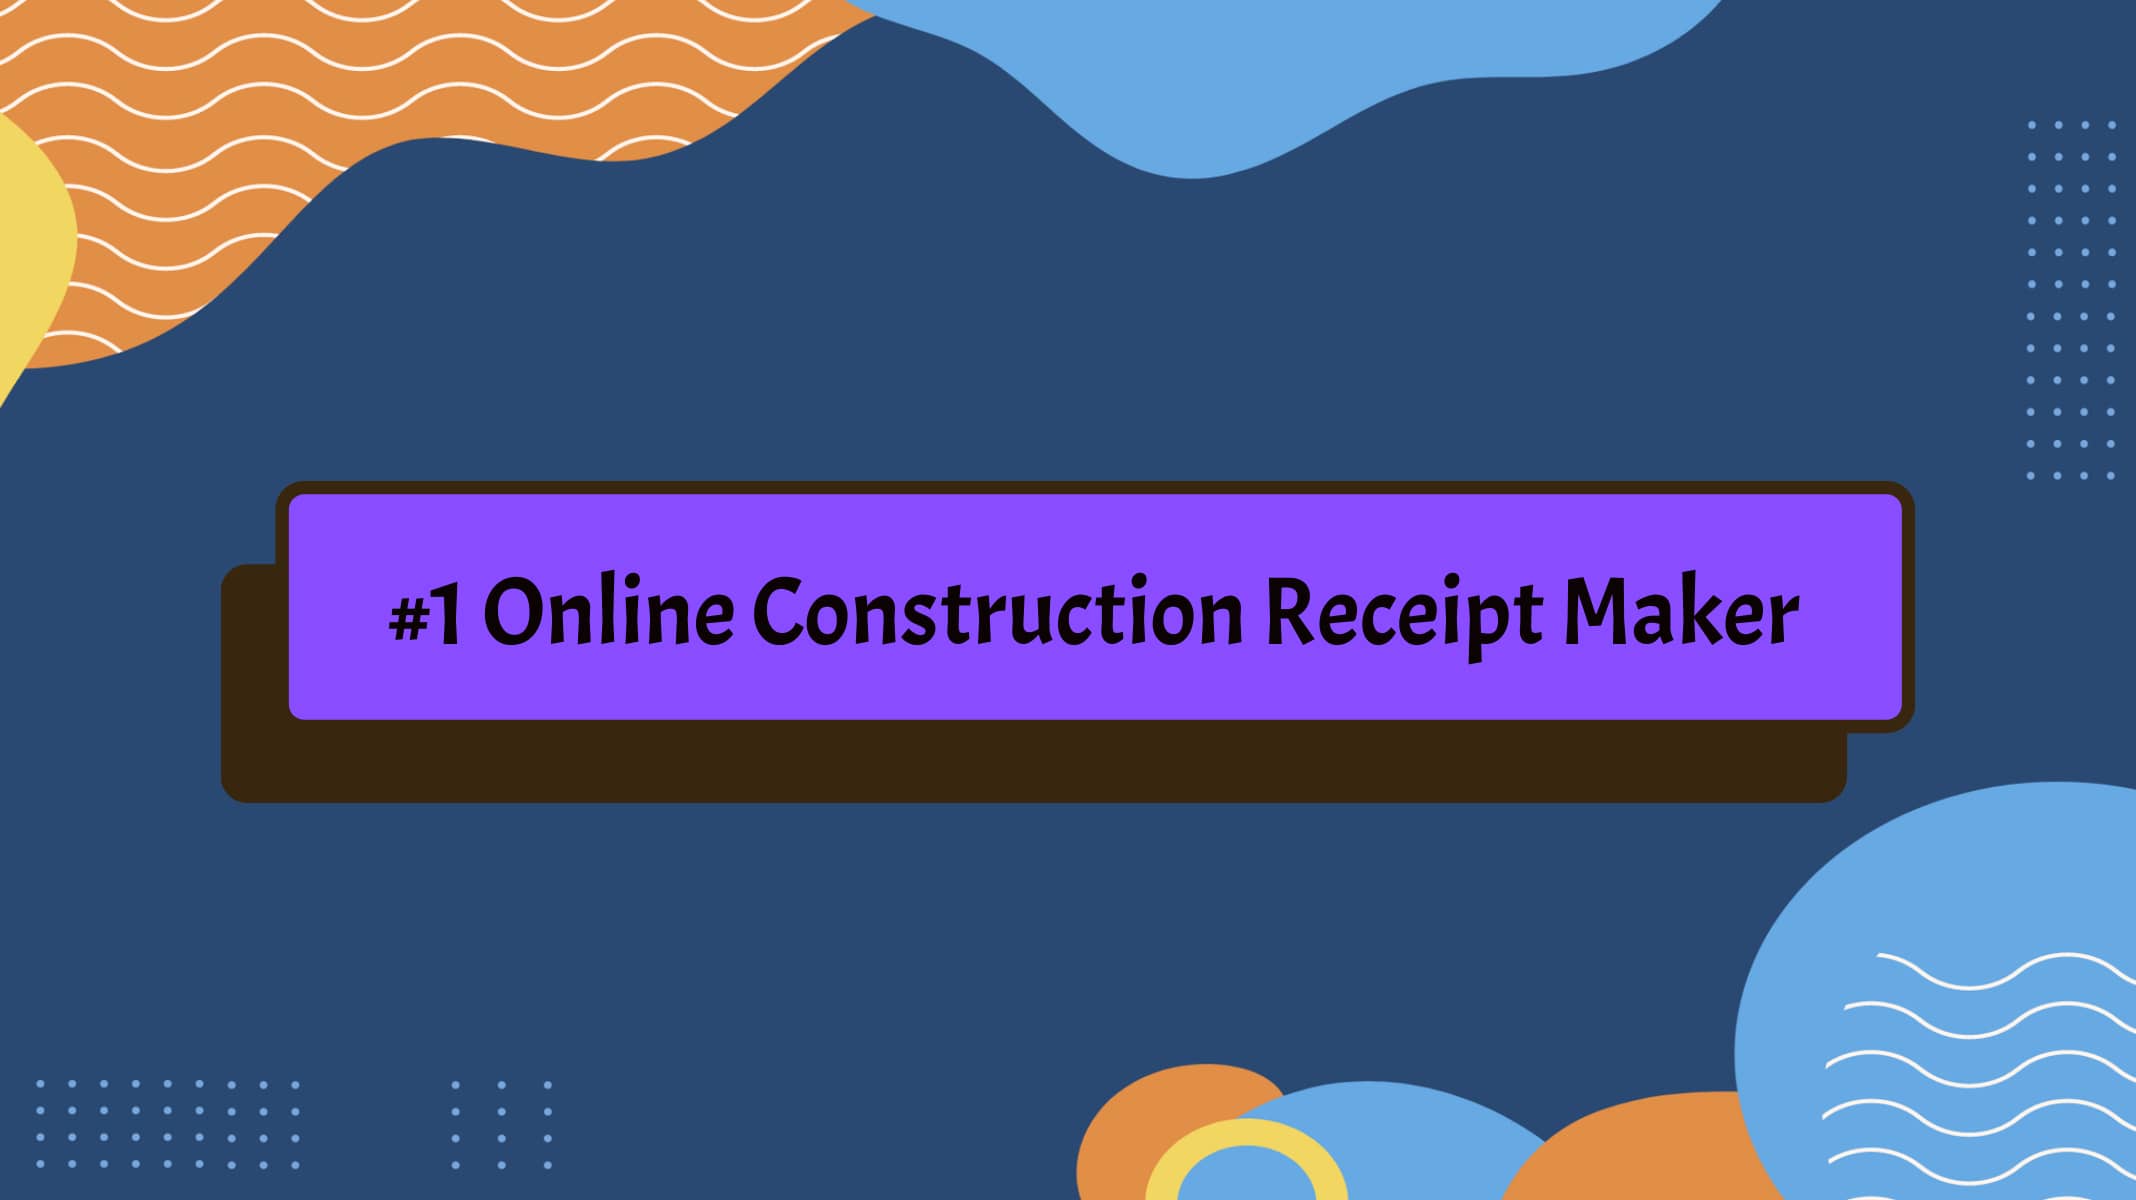 Online Construction Receipt Maker